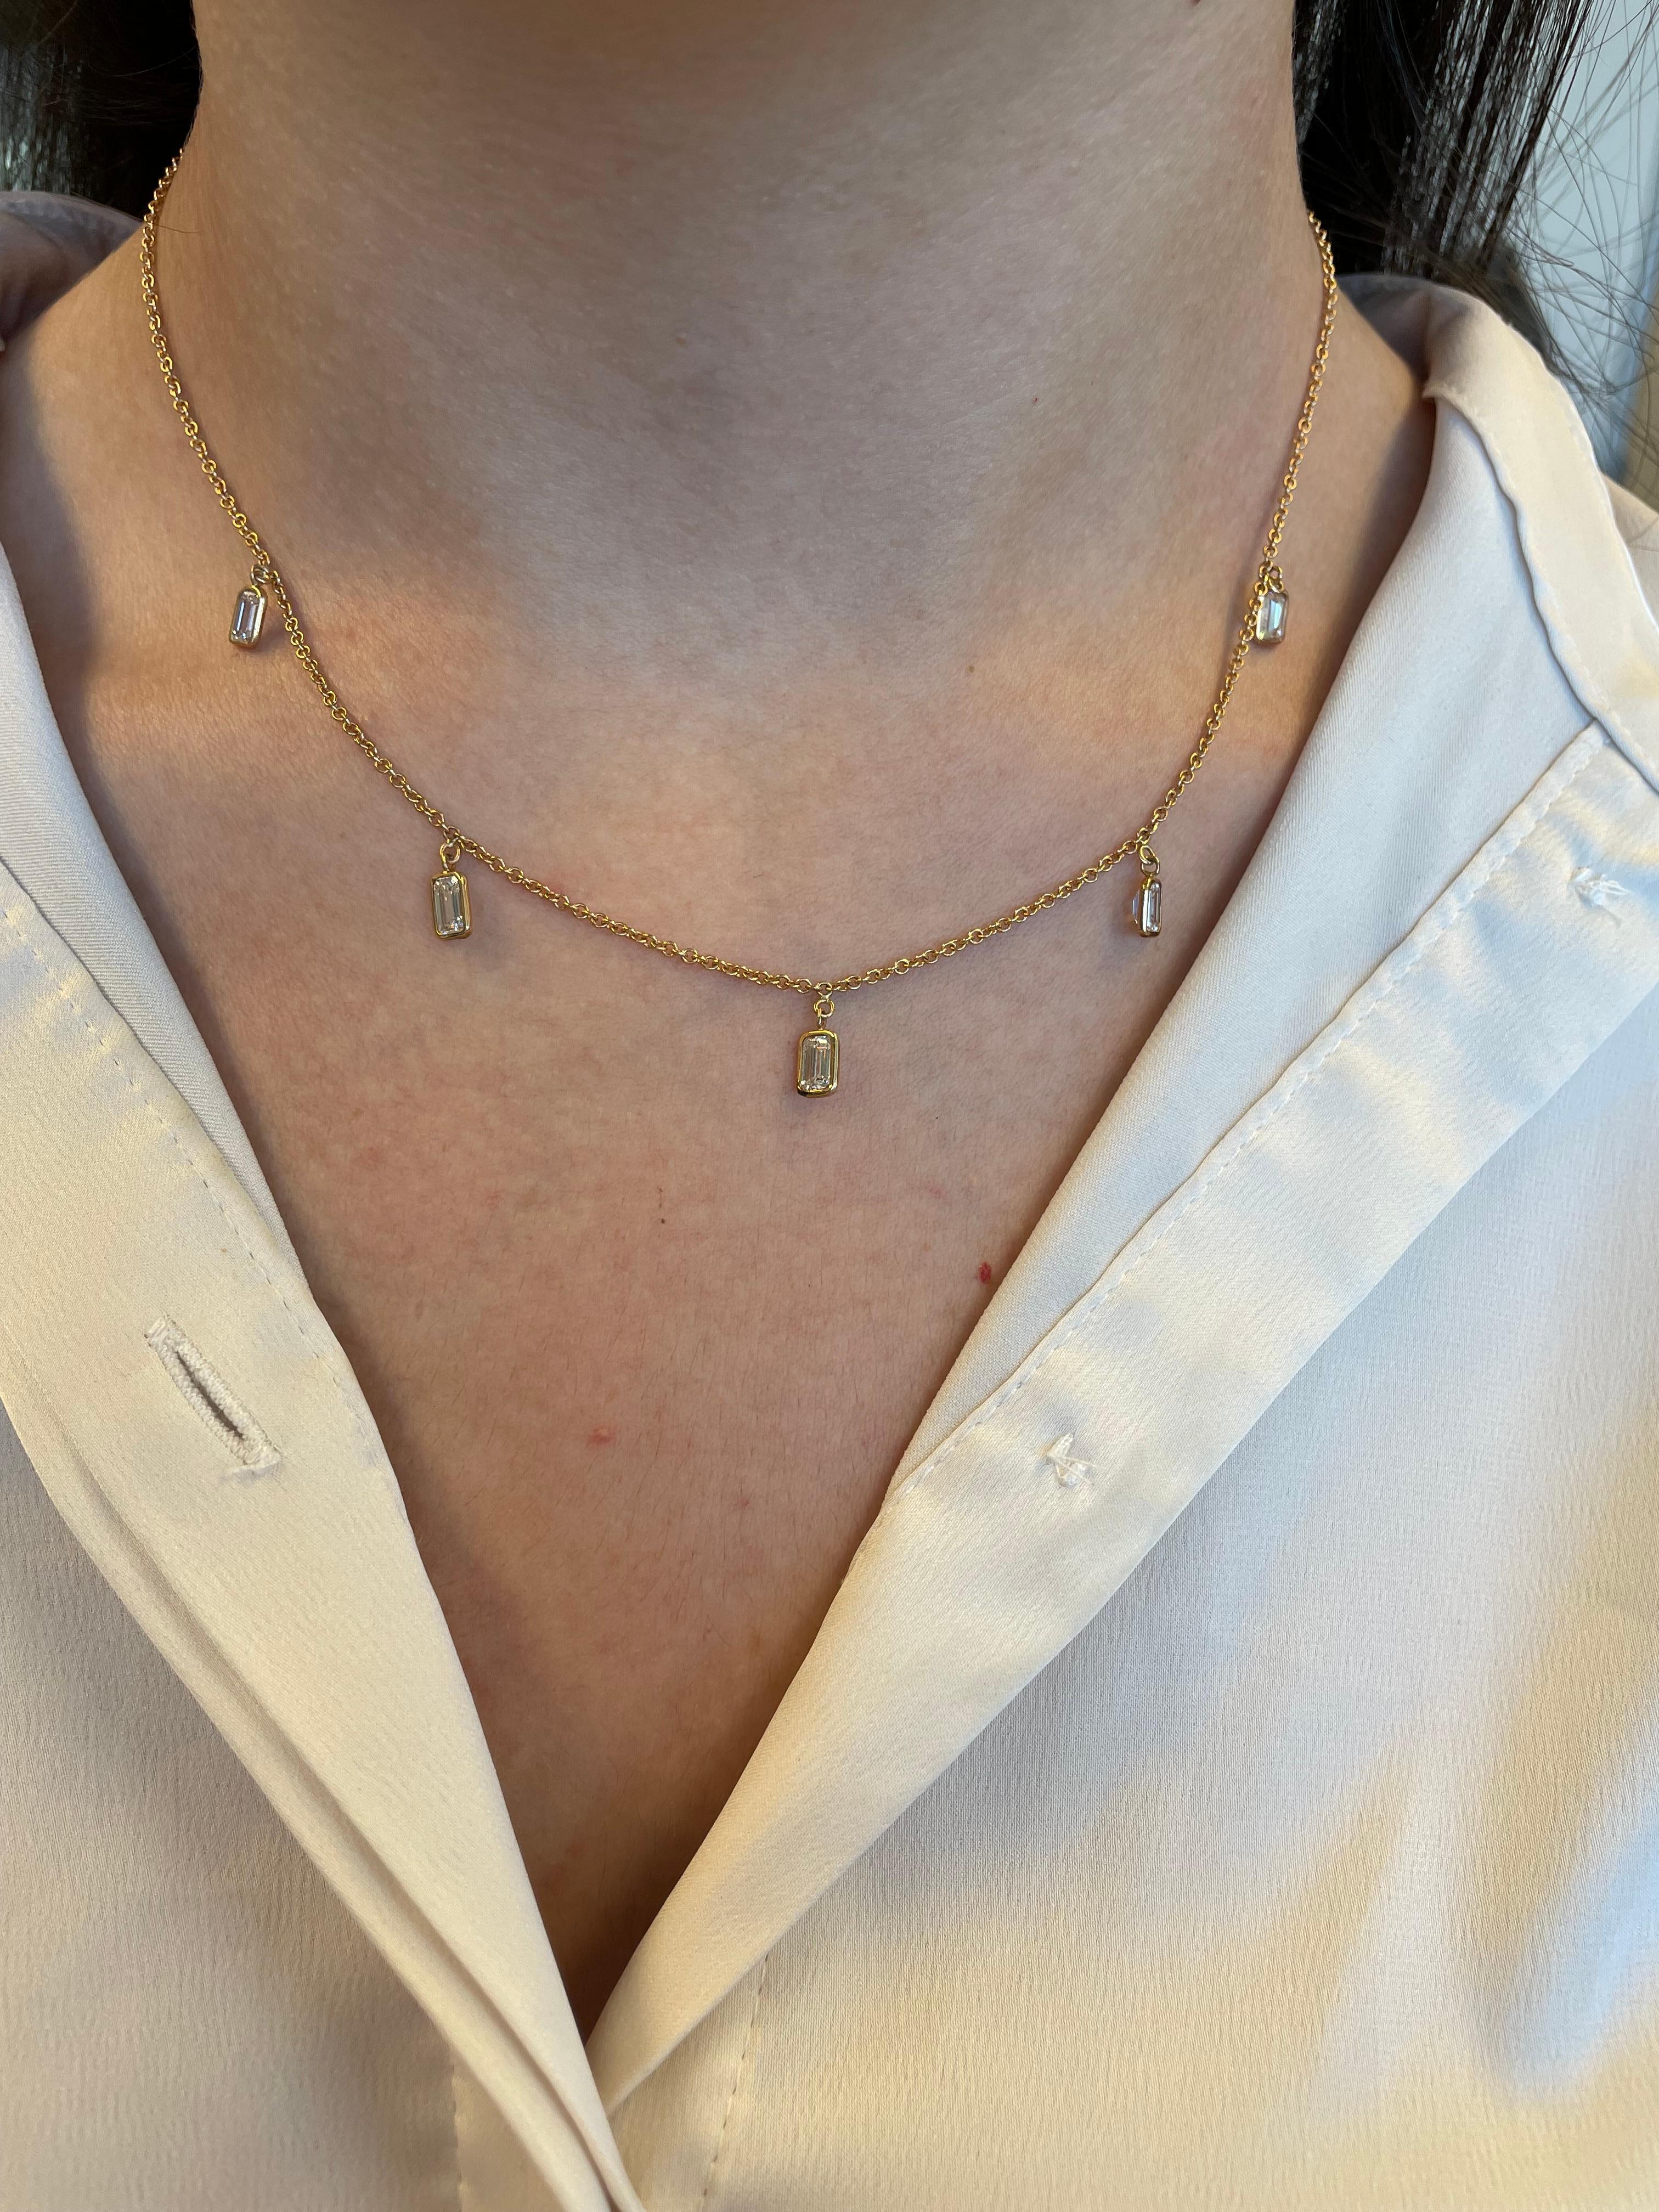 Exquisite baumelnde Diamanten im Smaragdschliff als Meterware für eine moderne Halskette. Von Alexander Beverly Hills.
5 Diamanten im Smaragdschliff, insgesamt 1,93 Karat. Ungefähr G/H Farbe und VS Reinheit. Lünette in 18 Karat Roségold gefasst.